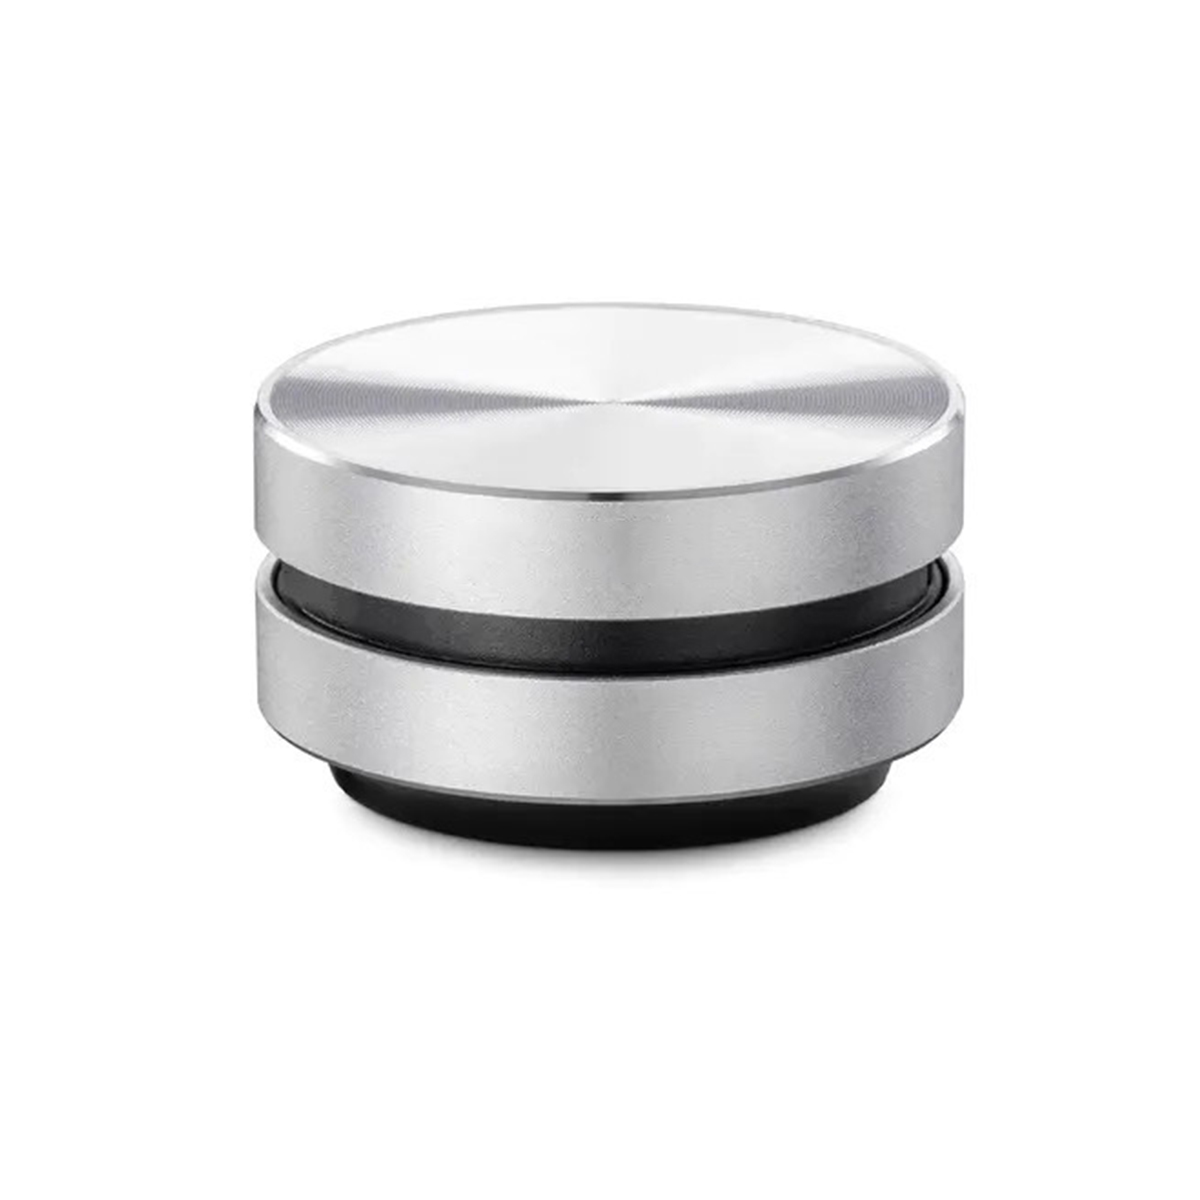 BRIGHTAKE Drahtloser Bluetooth 5.0-Knochenschall-Lautsprecher mit omnidirektionalem Silber Lautsprecher, Mikrofon